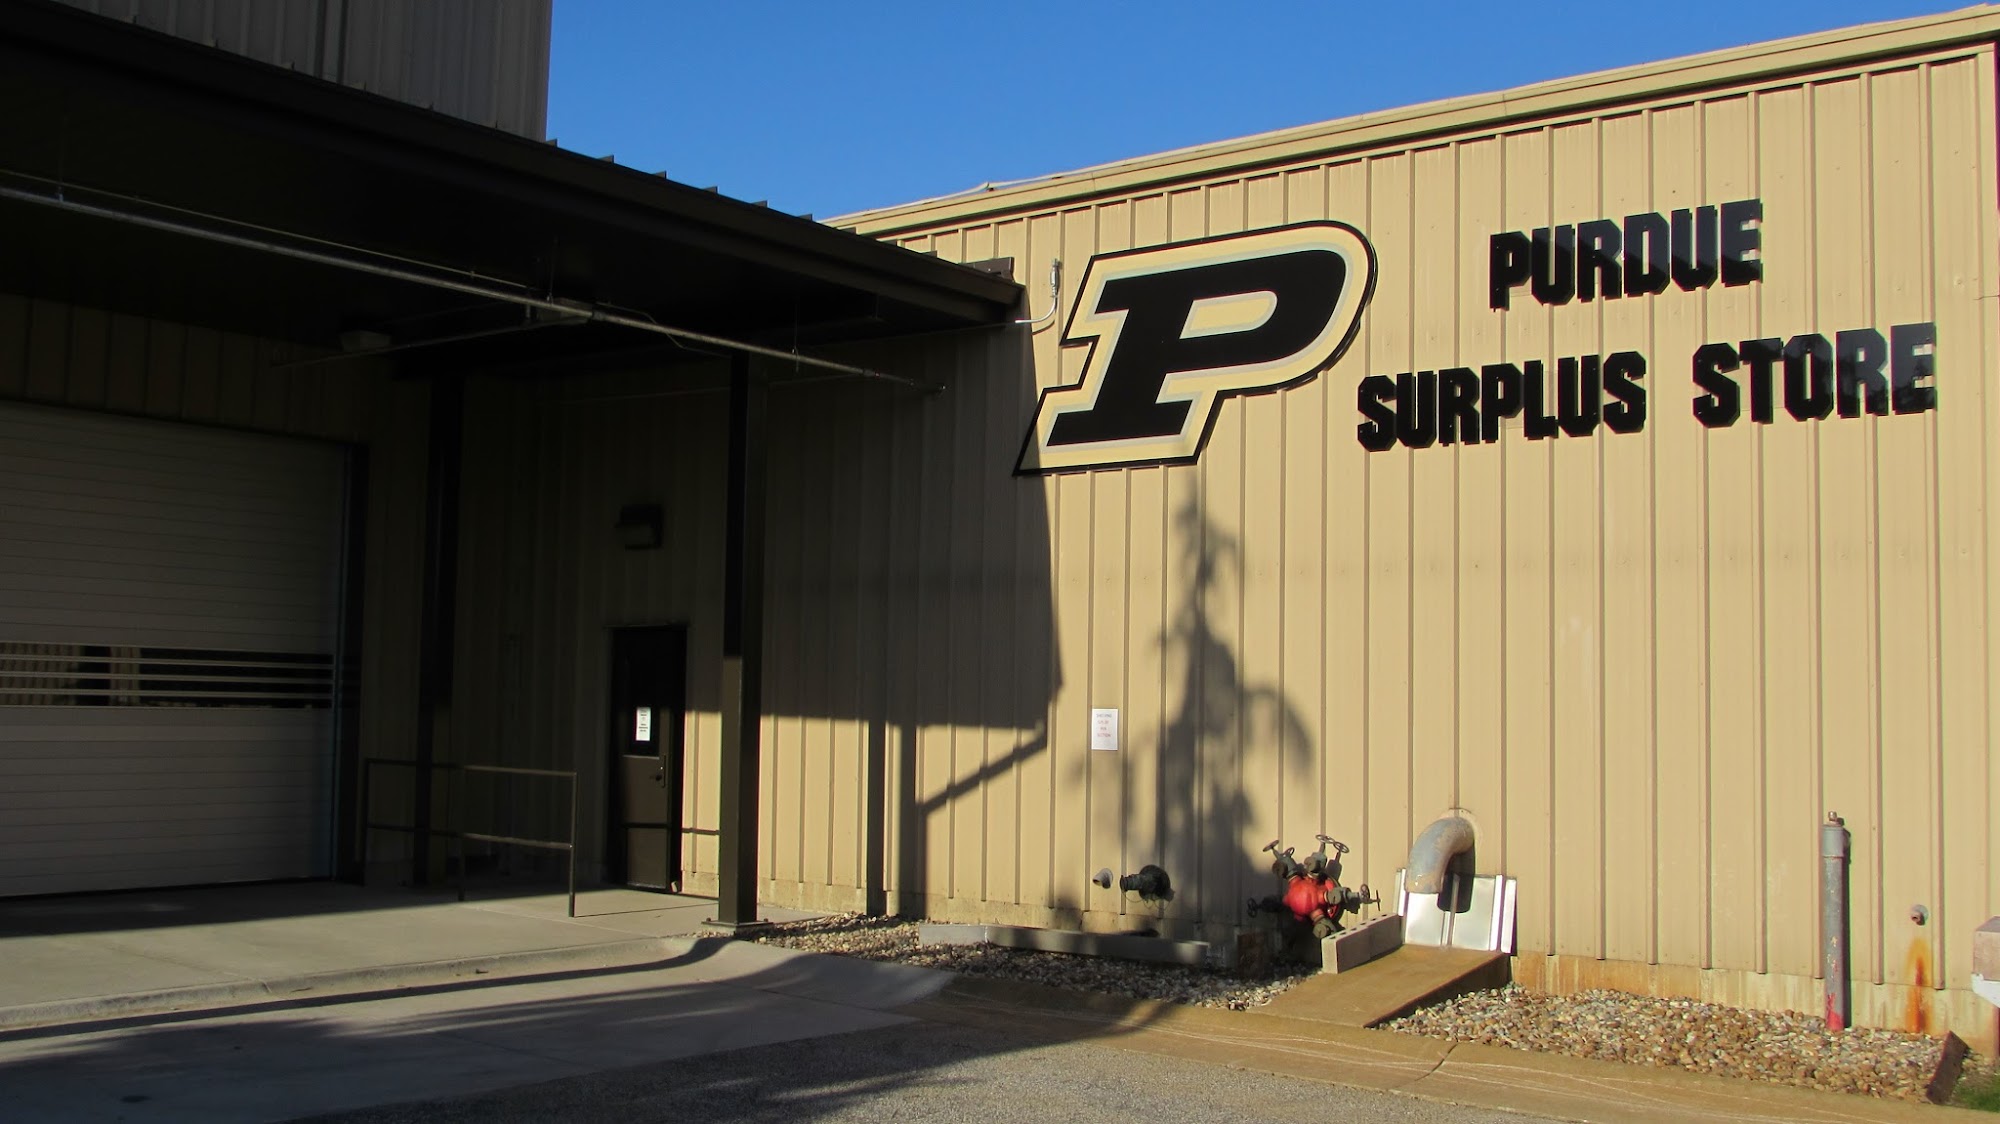 Purdue University Surplus Store